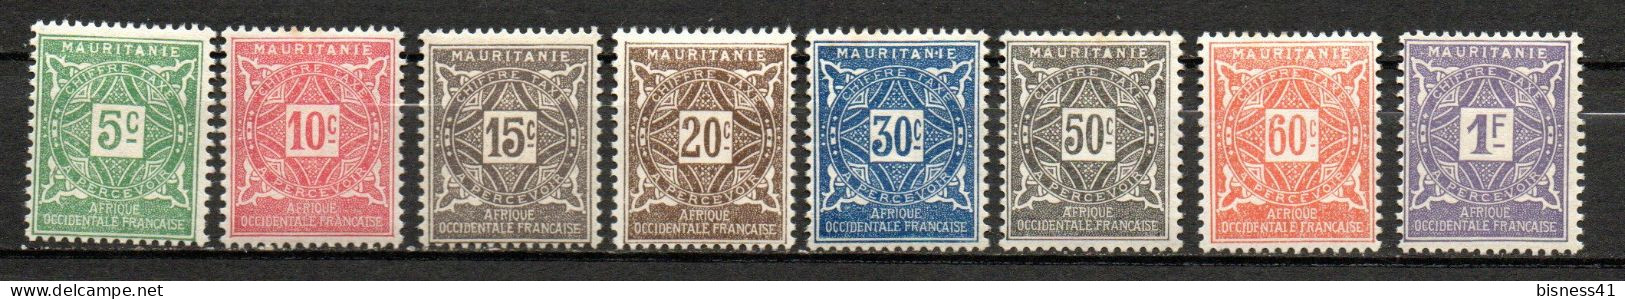 Col33  Colonie Mauritanie Taxe N° 17 à 24 Neuf X MH  Cote : 9,25€ - Usati